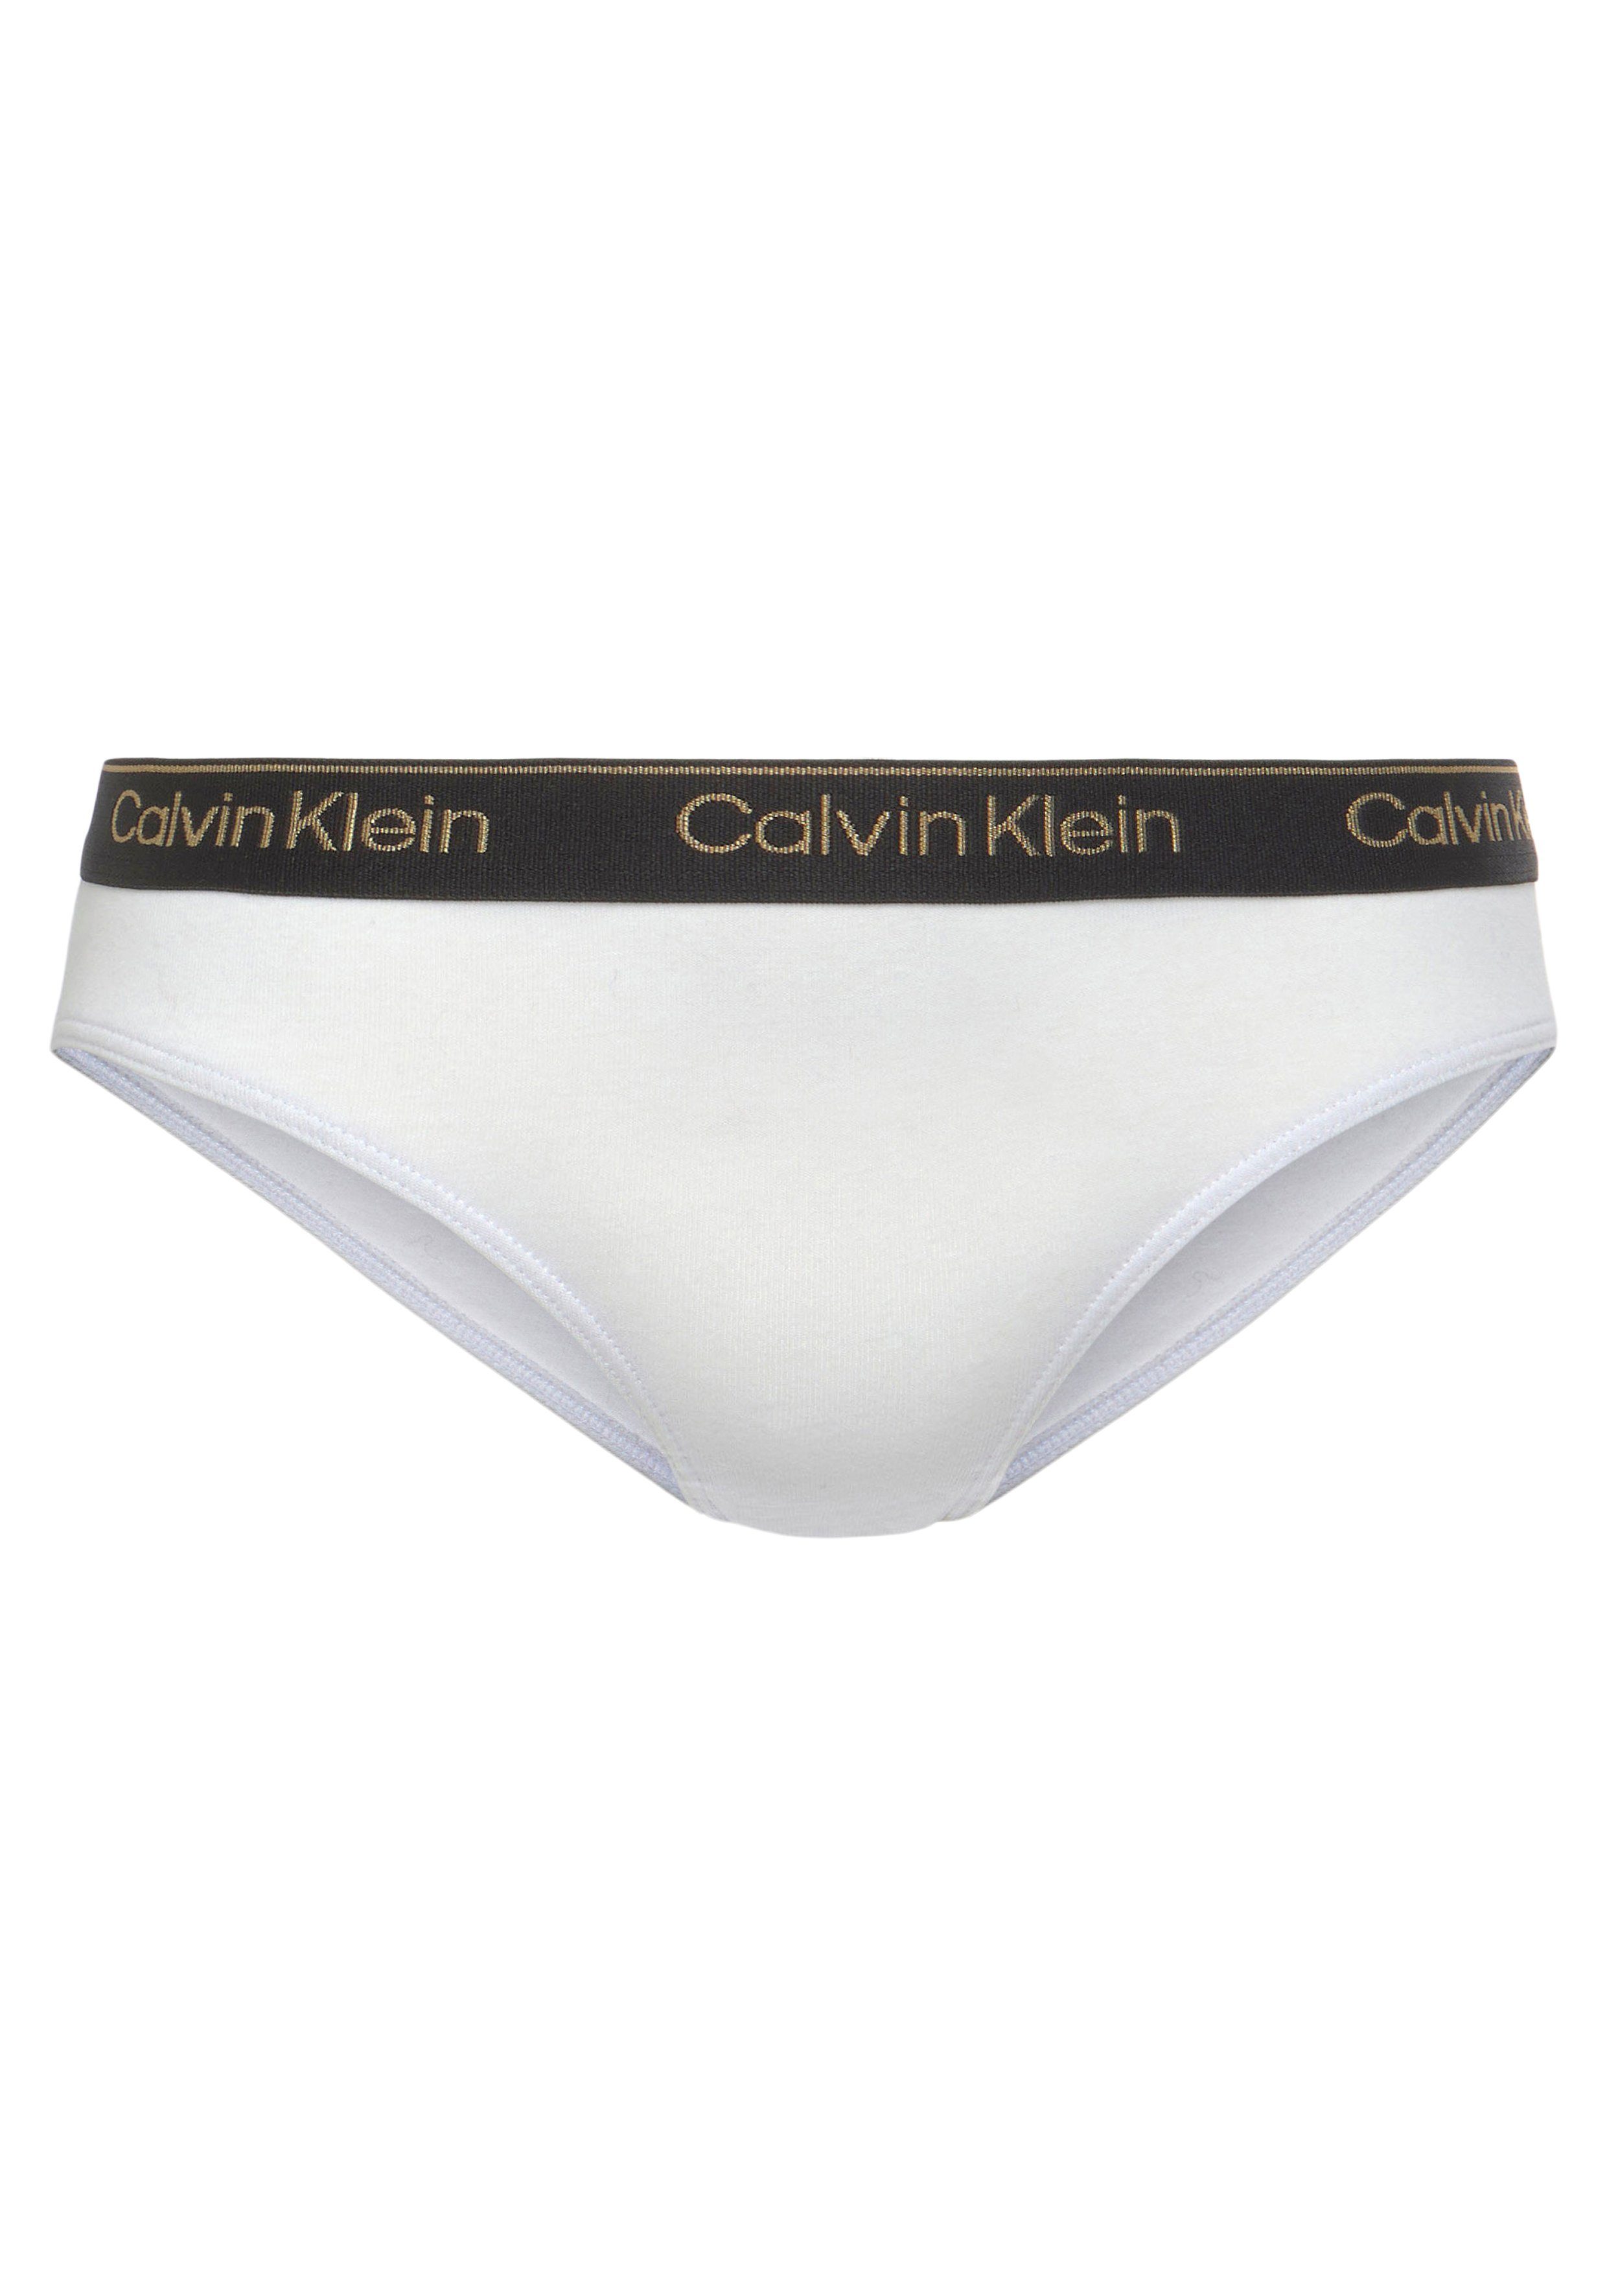 Calvin Klein Underwear sportlichem Aop/Rglare/Spink/Pwhite/Pblack BIKINI 5er-Pack) (Packung, 5-St., Bikinislip Elastikbund mit 5PK